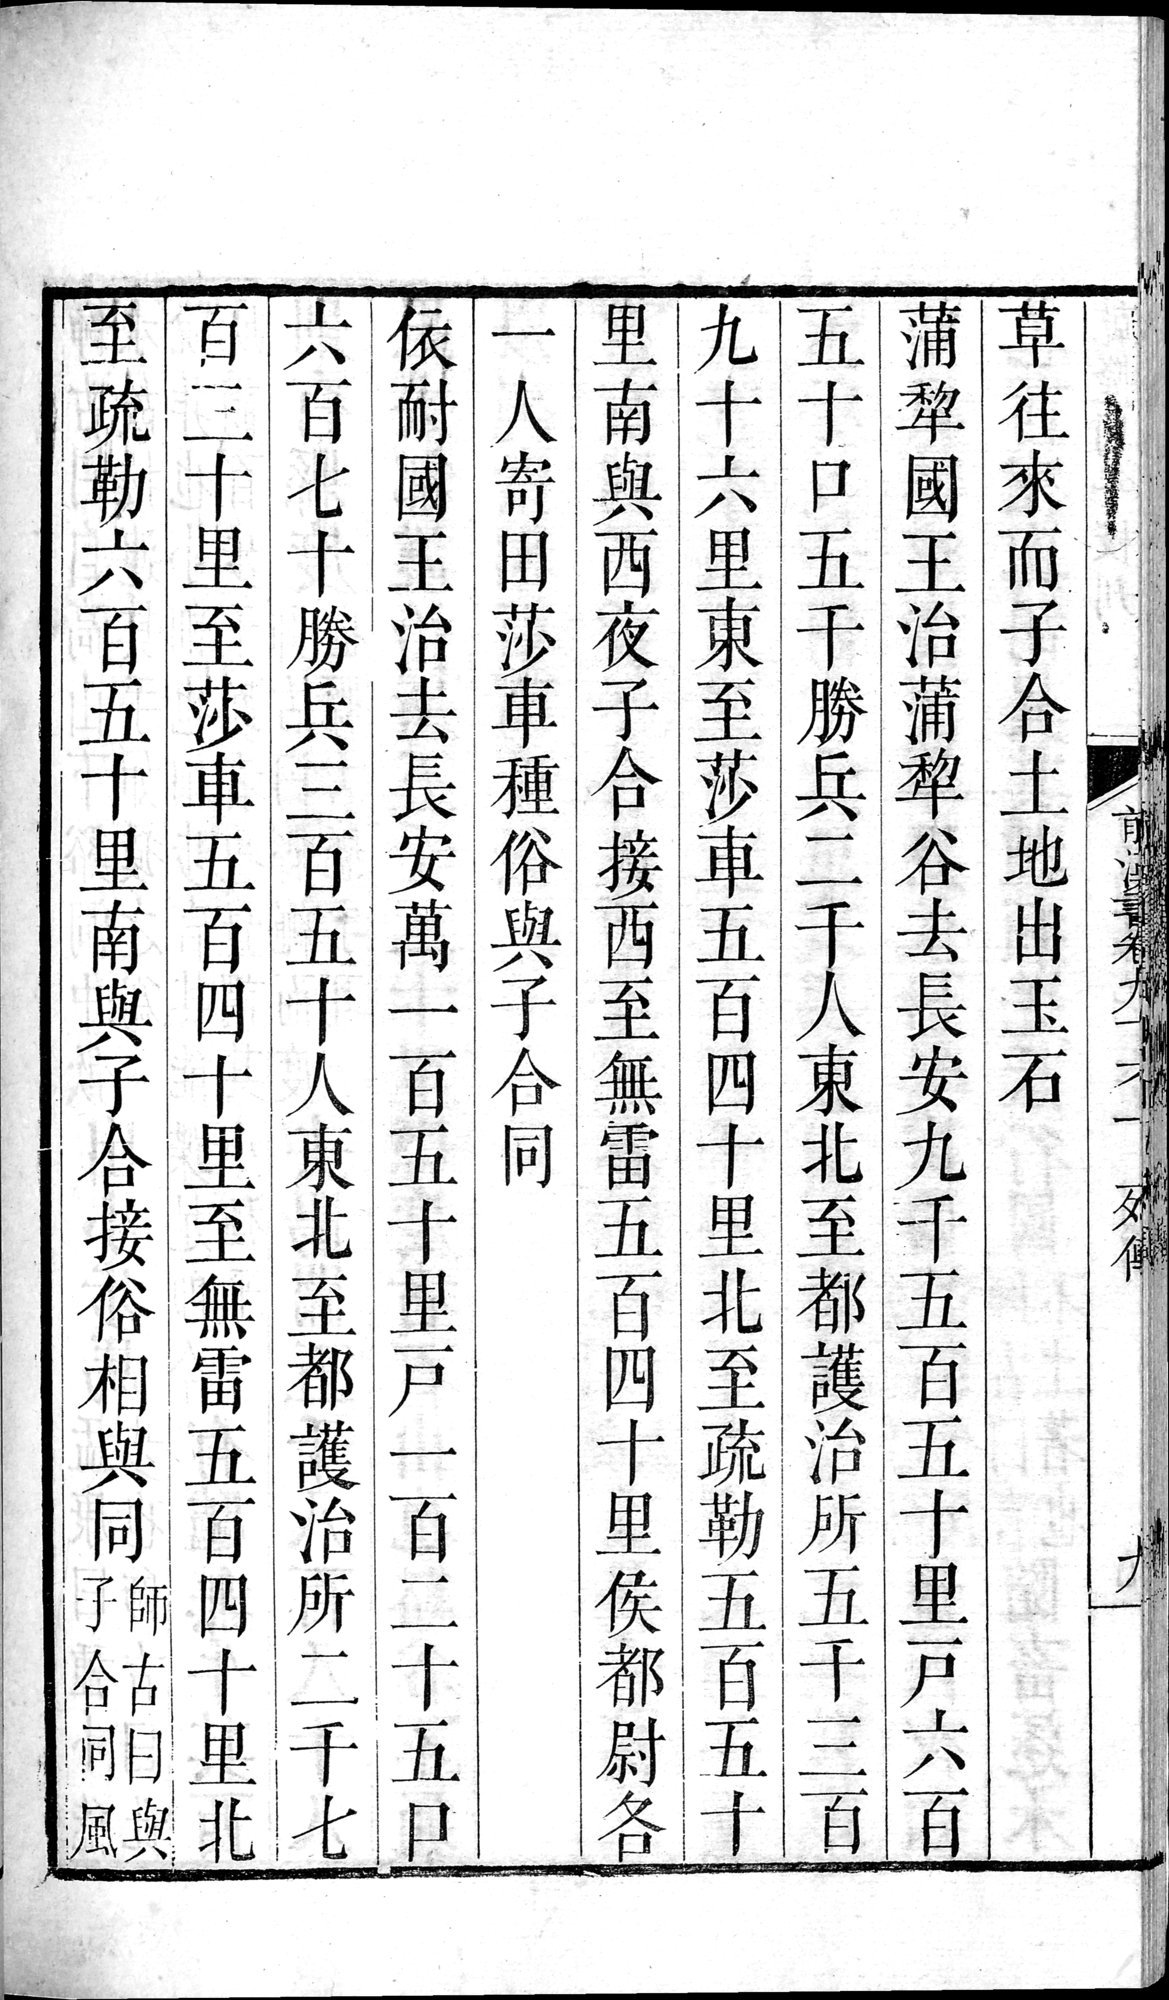 前漢書 : vol.96 top / Page 18 (Grayscale High Resolution Image)